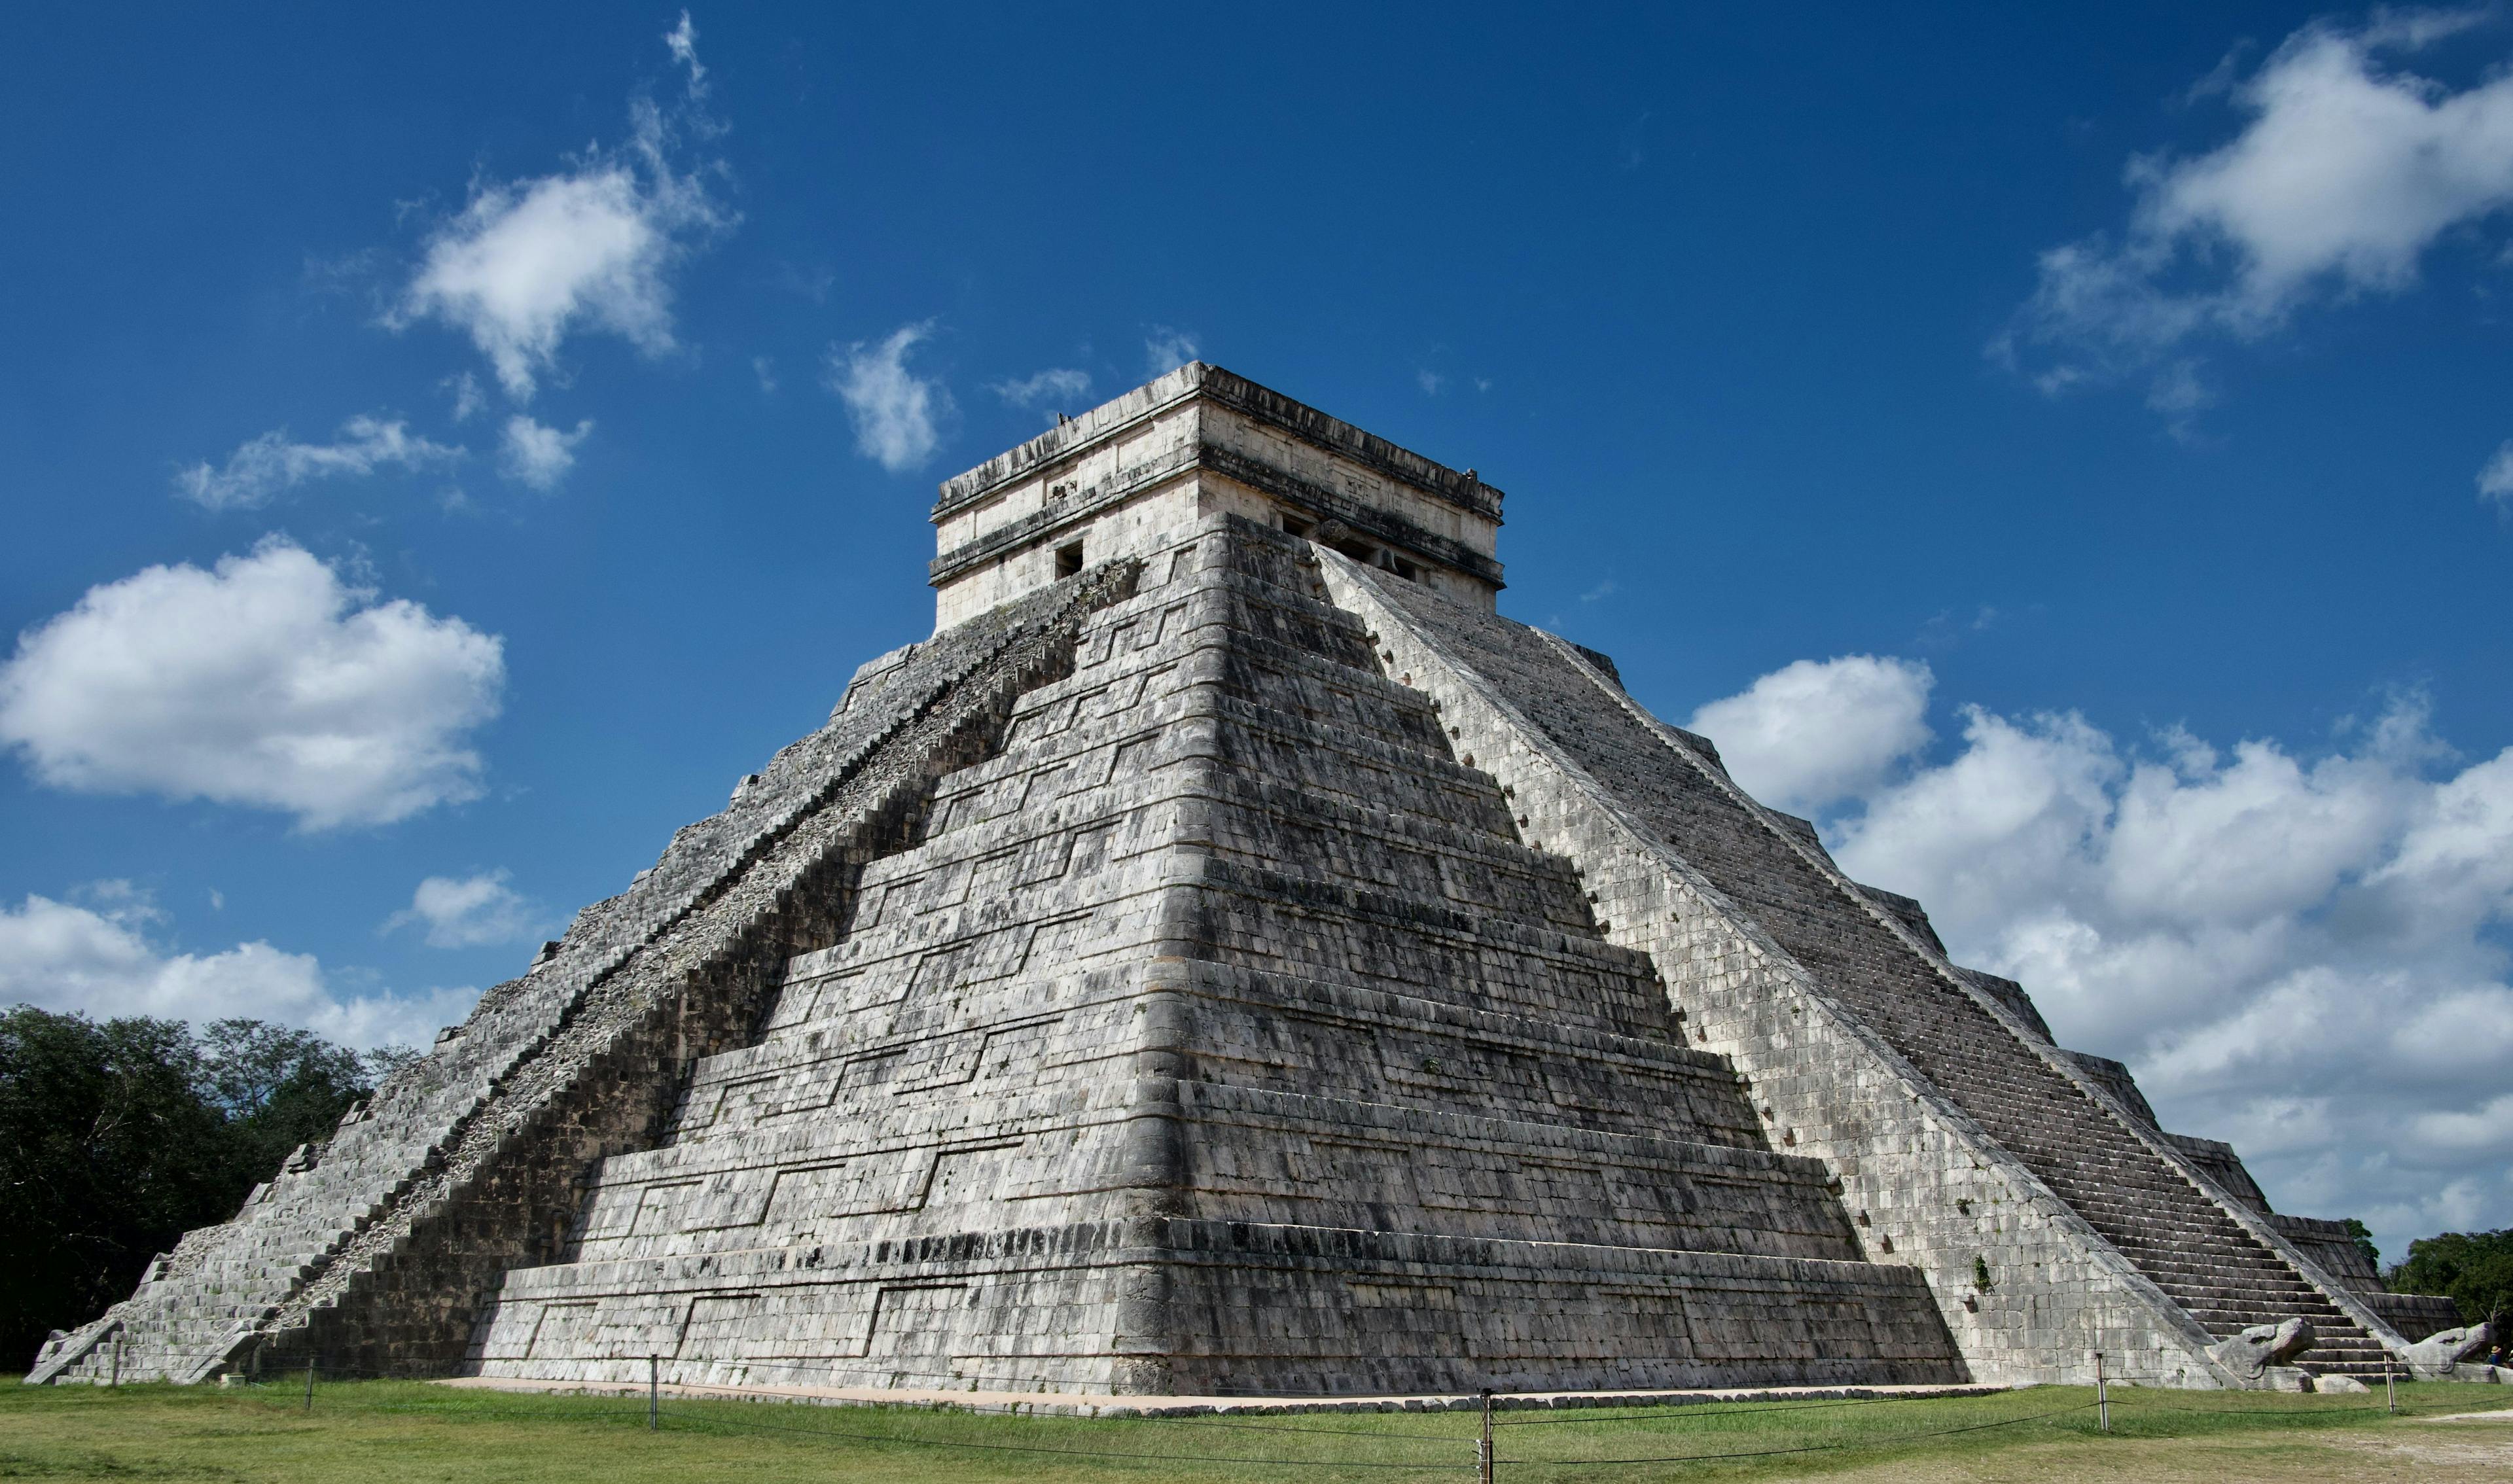 Chichén Itzá pyramid in Mexico